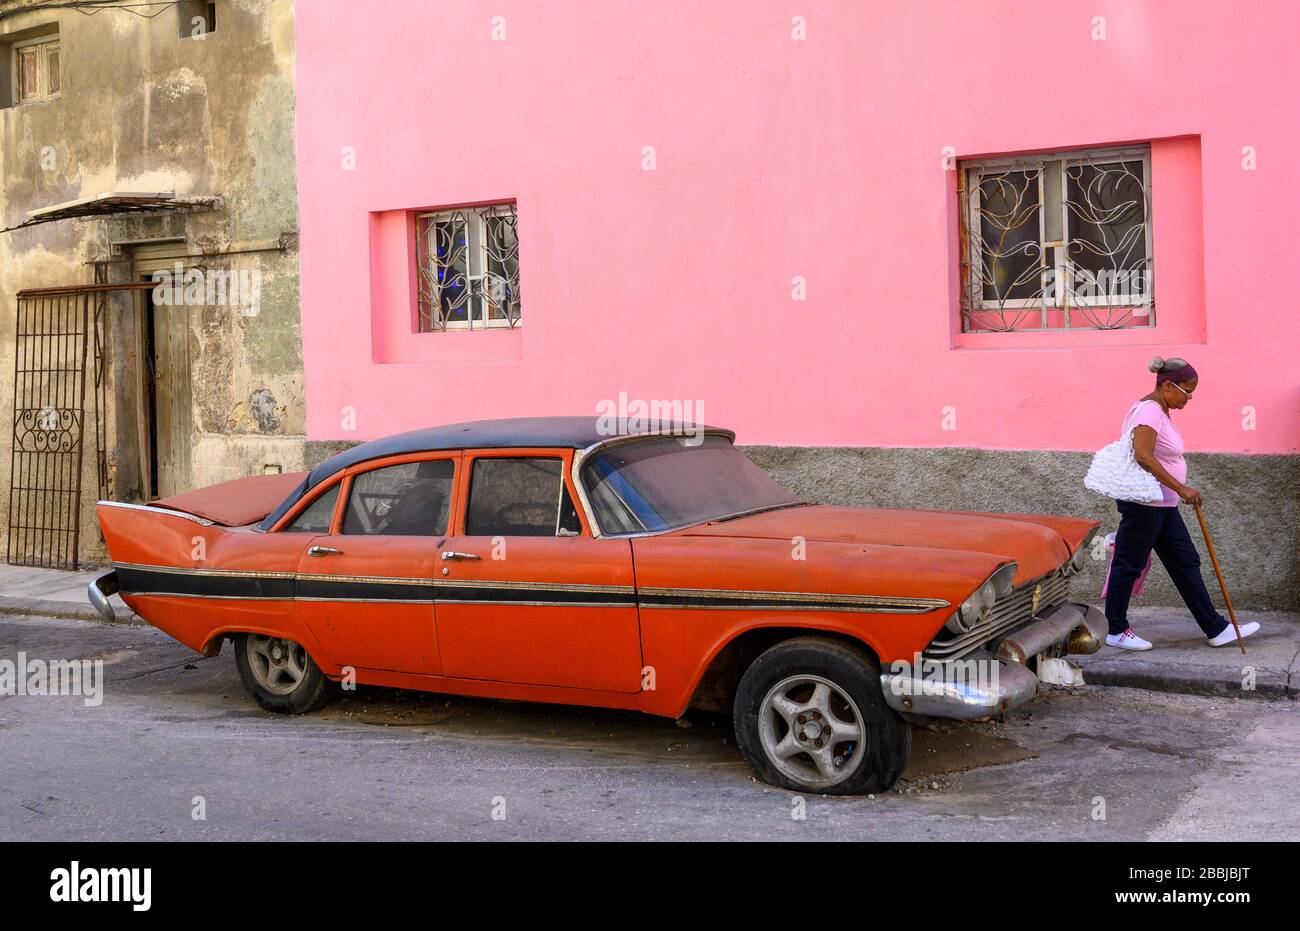 Mur rose avec ancienne voiture rouge américaine des années 50, Centro, la Havane, Cuba Banque D'Images